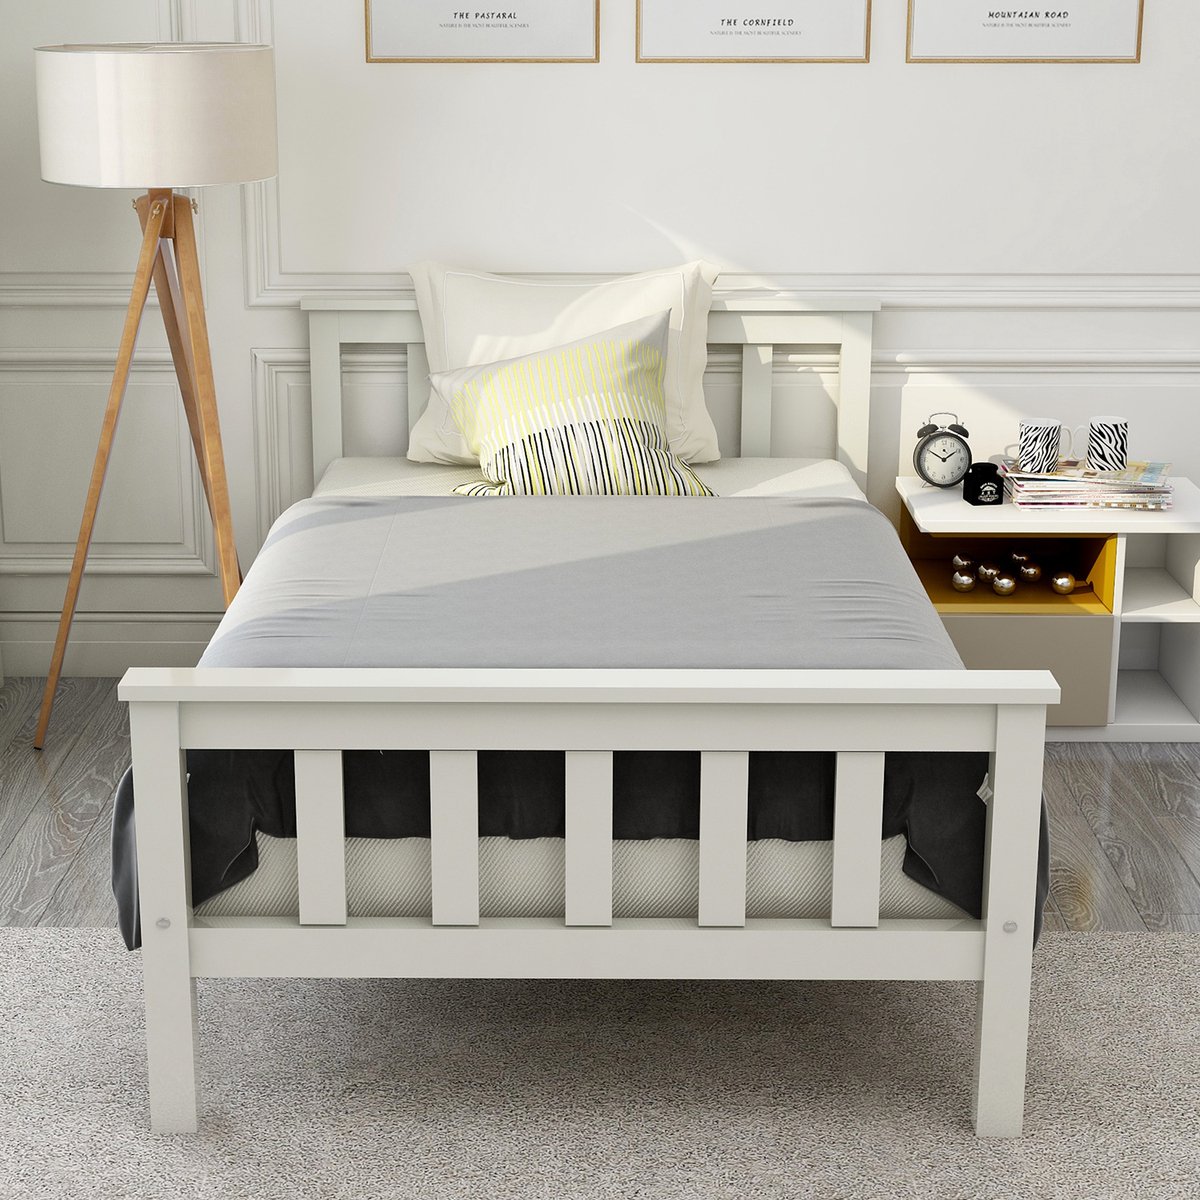 Twin Bed Frame Houten Latten Platform -Twin Size Bed Frame met Hoofdeinde - massief houten kinderbed-massief grenen-wit 90 x 200 cm